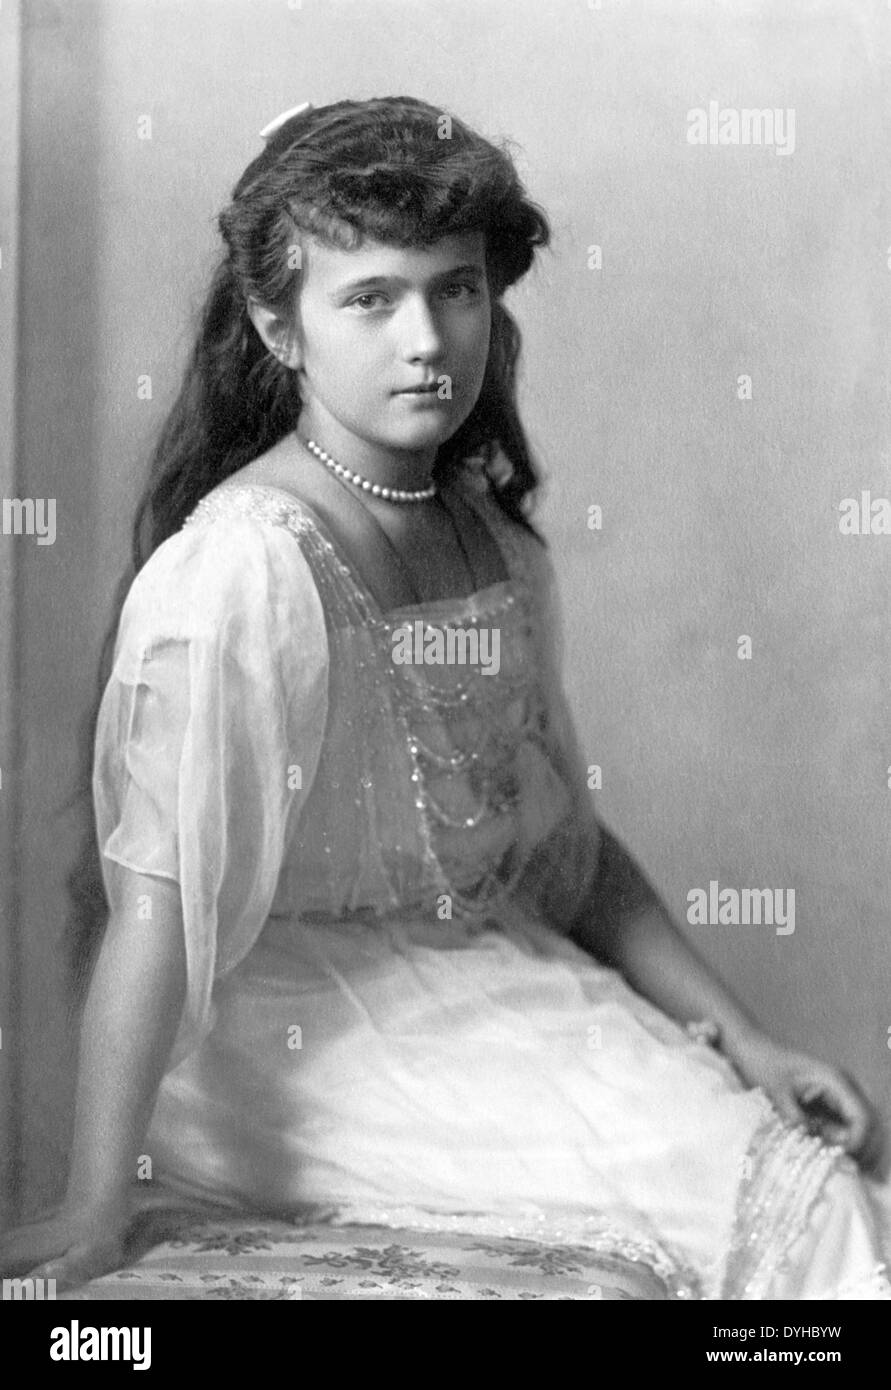 La gran duquesa Anastasia NIKOLAEVNA de Rusia (1901-1918), la hija más joven del zar Nicholas II, alrededor de 1914 Foto de stock